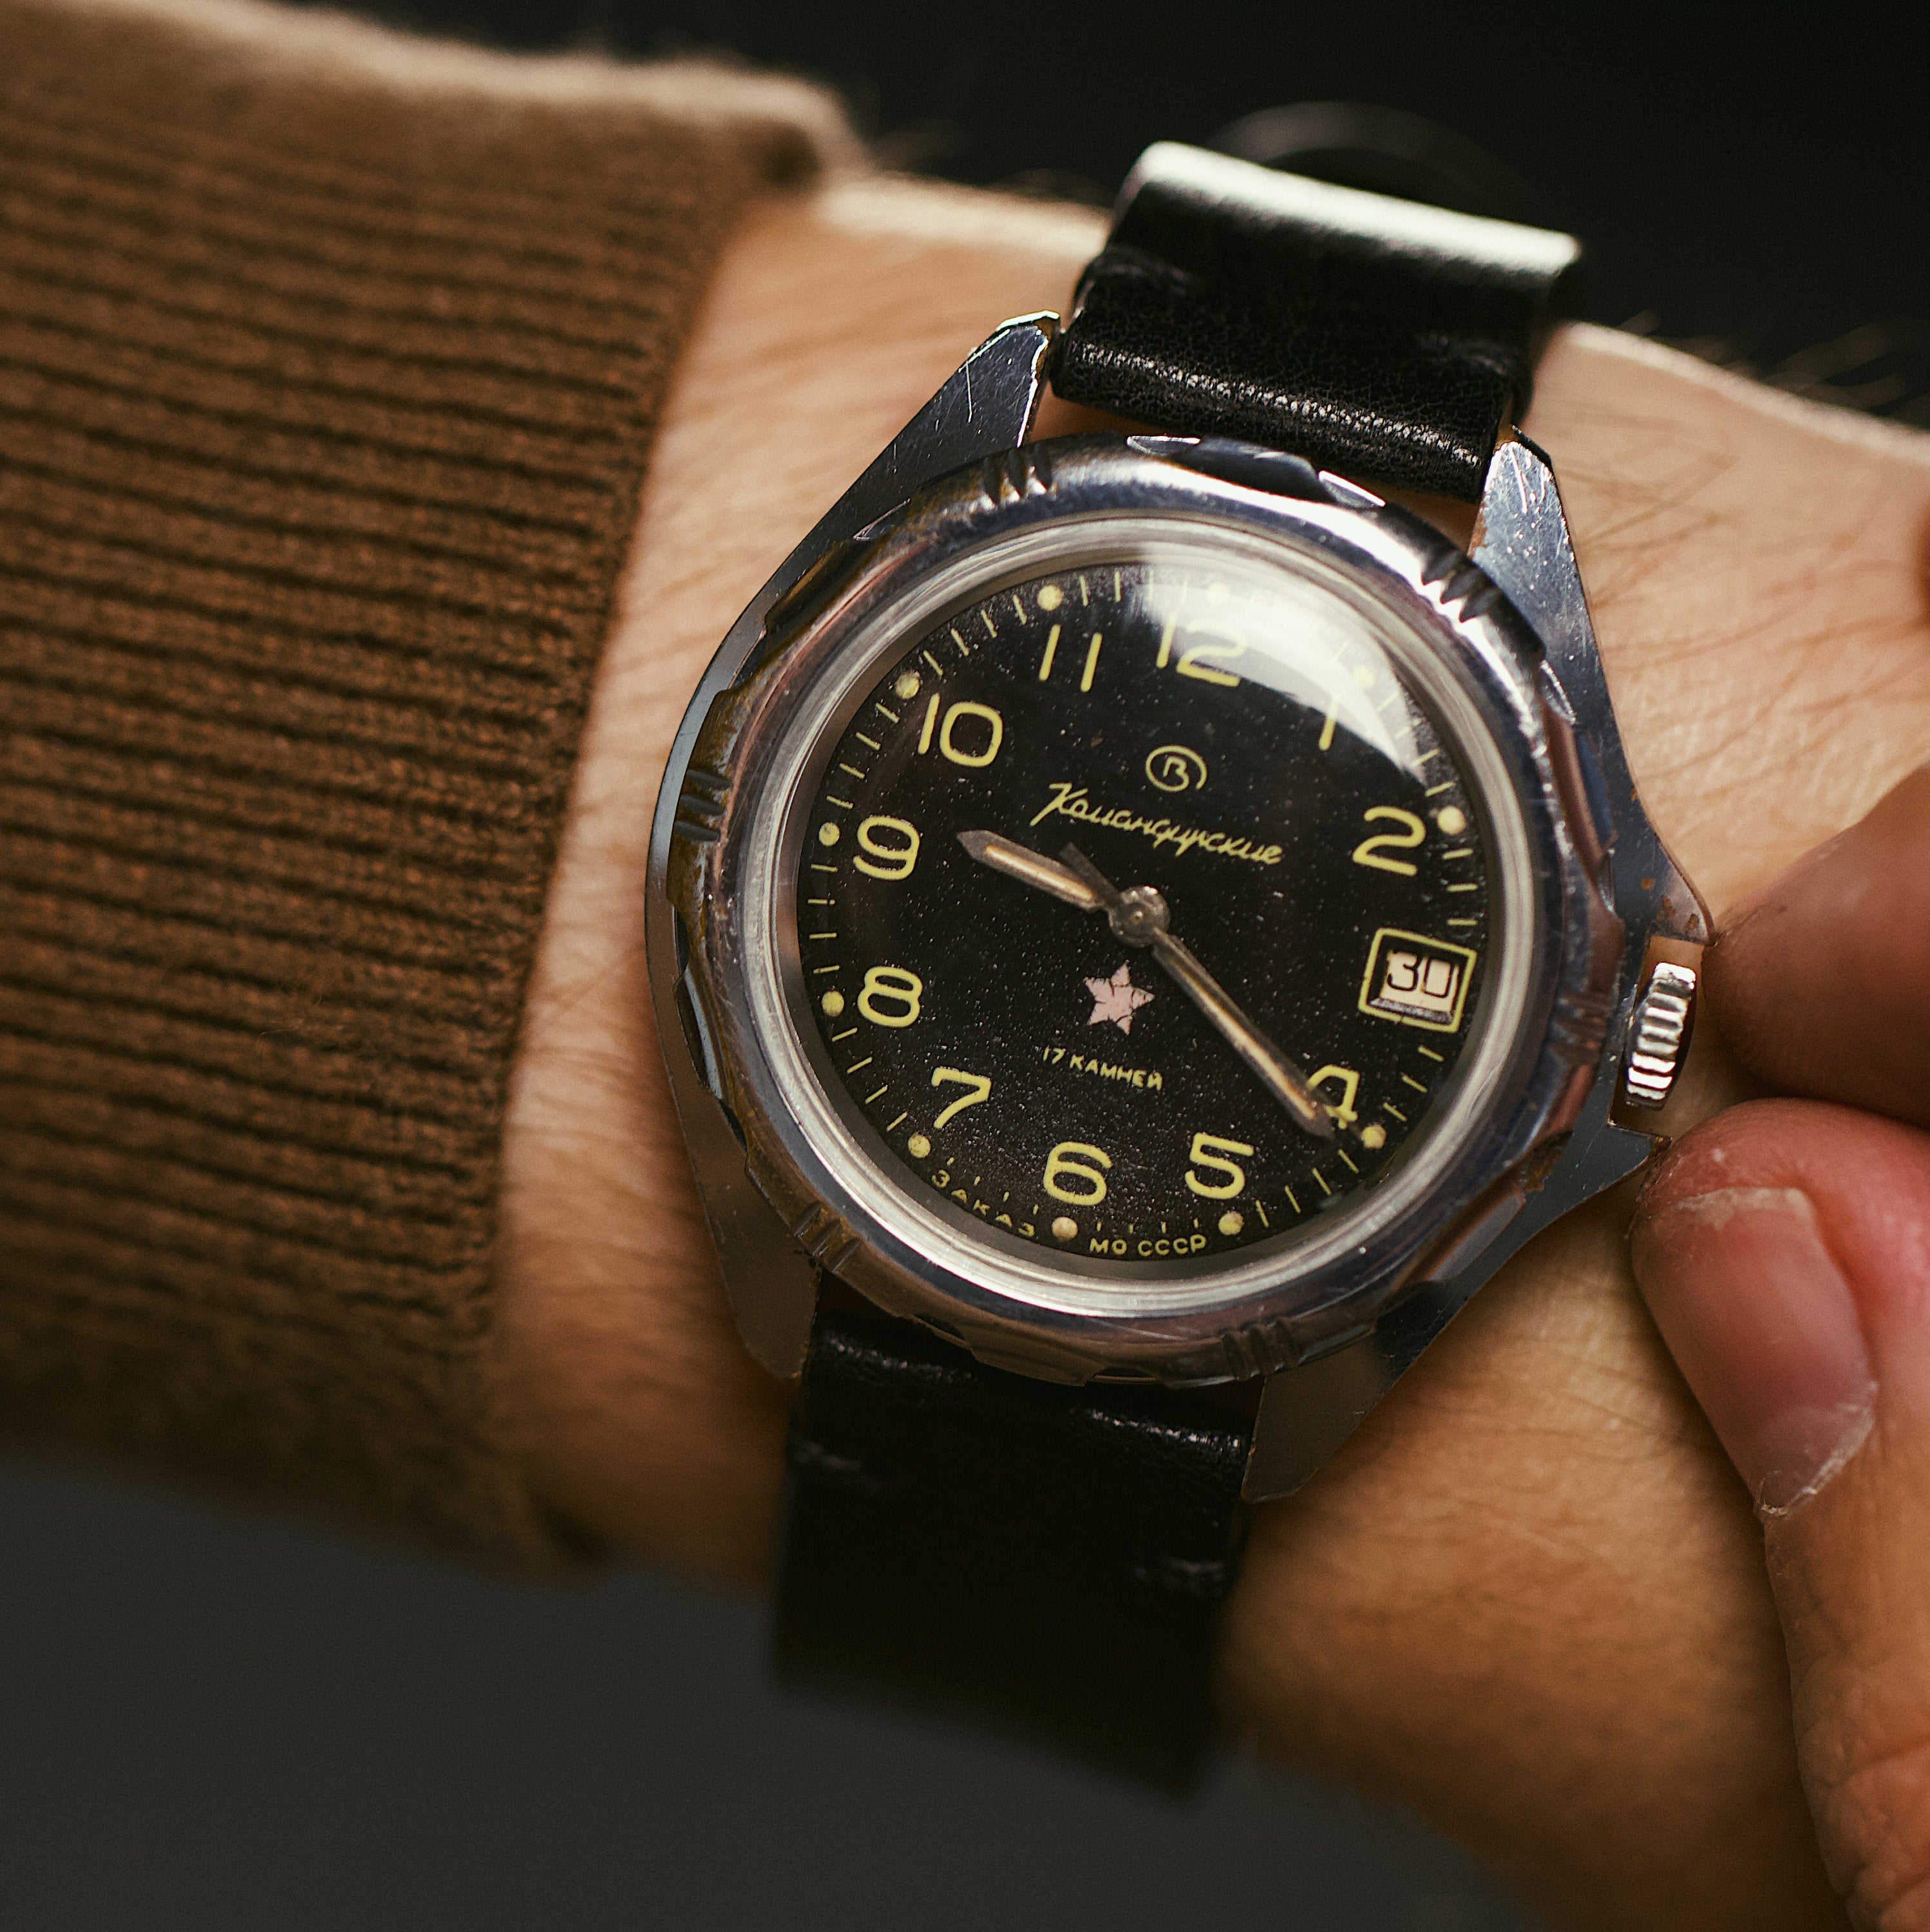 Soviet vintage men's wrist watch for men VOSTOK - Komandirskie with leather nato strap